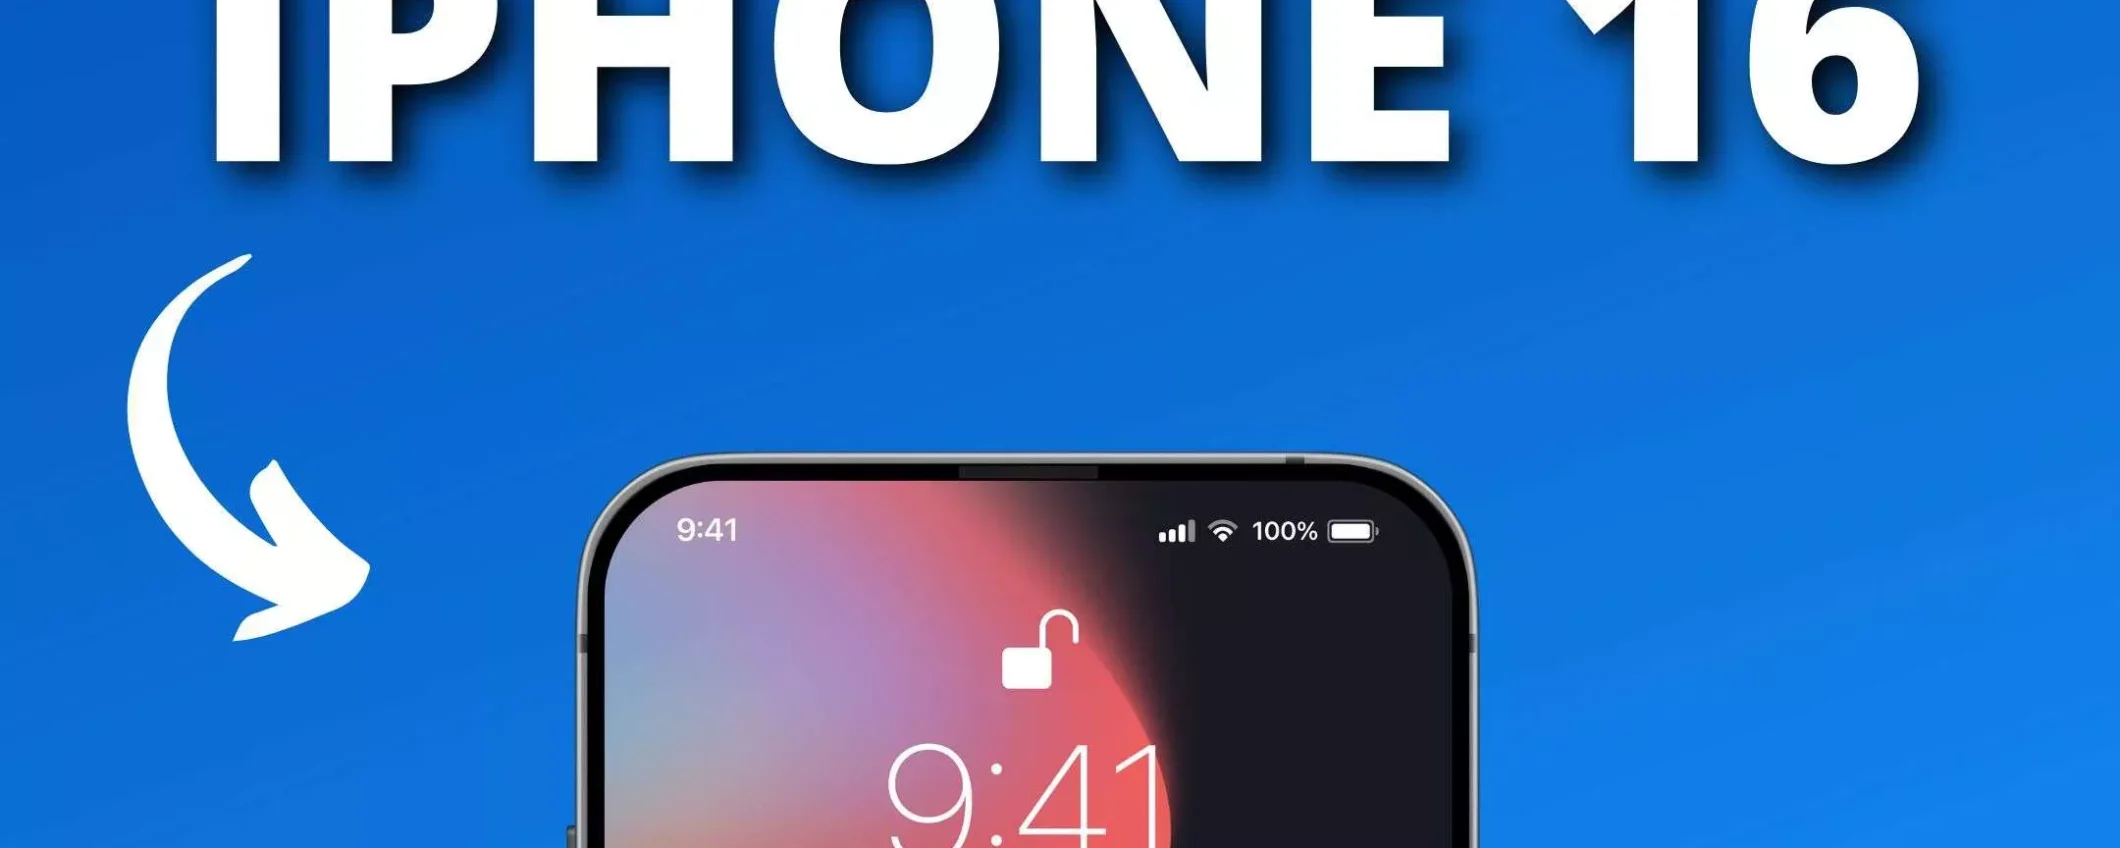 iPhone 16 Pro Max sarà GIGANTESCO: avrà uno schermo da 6,9